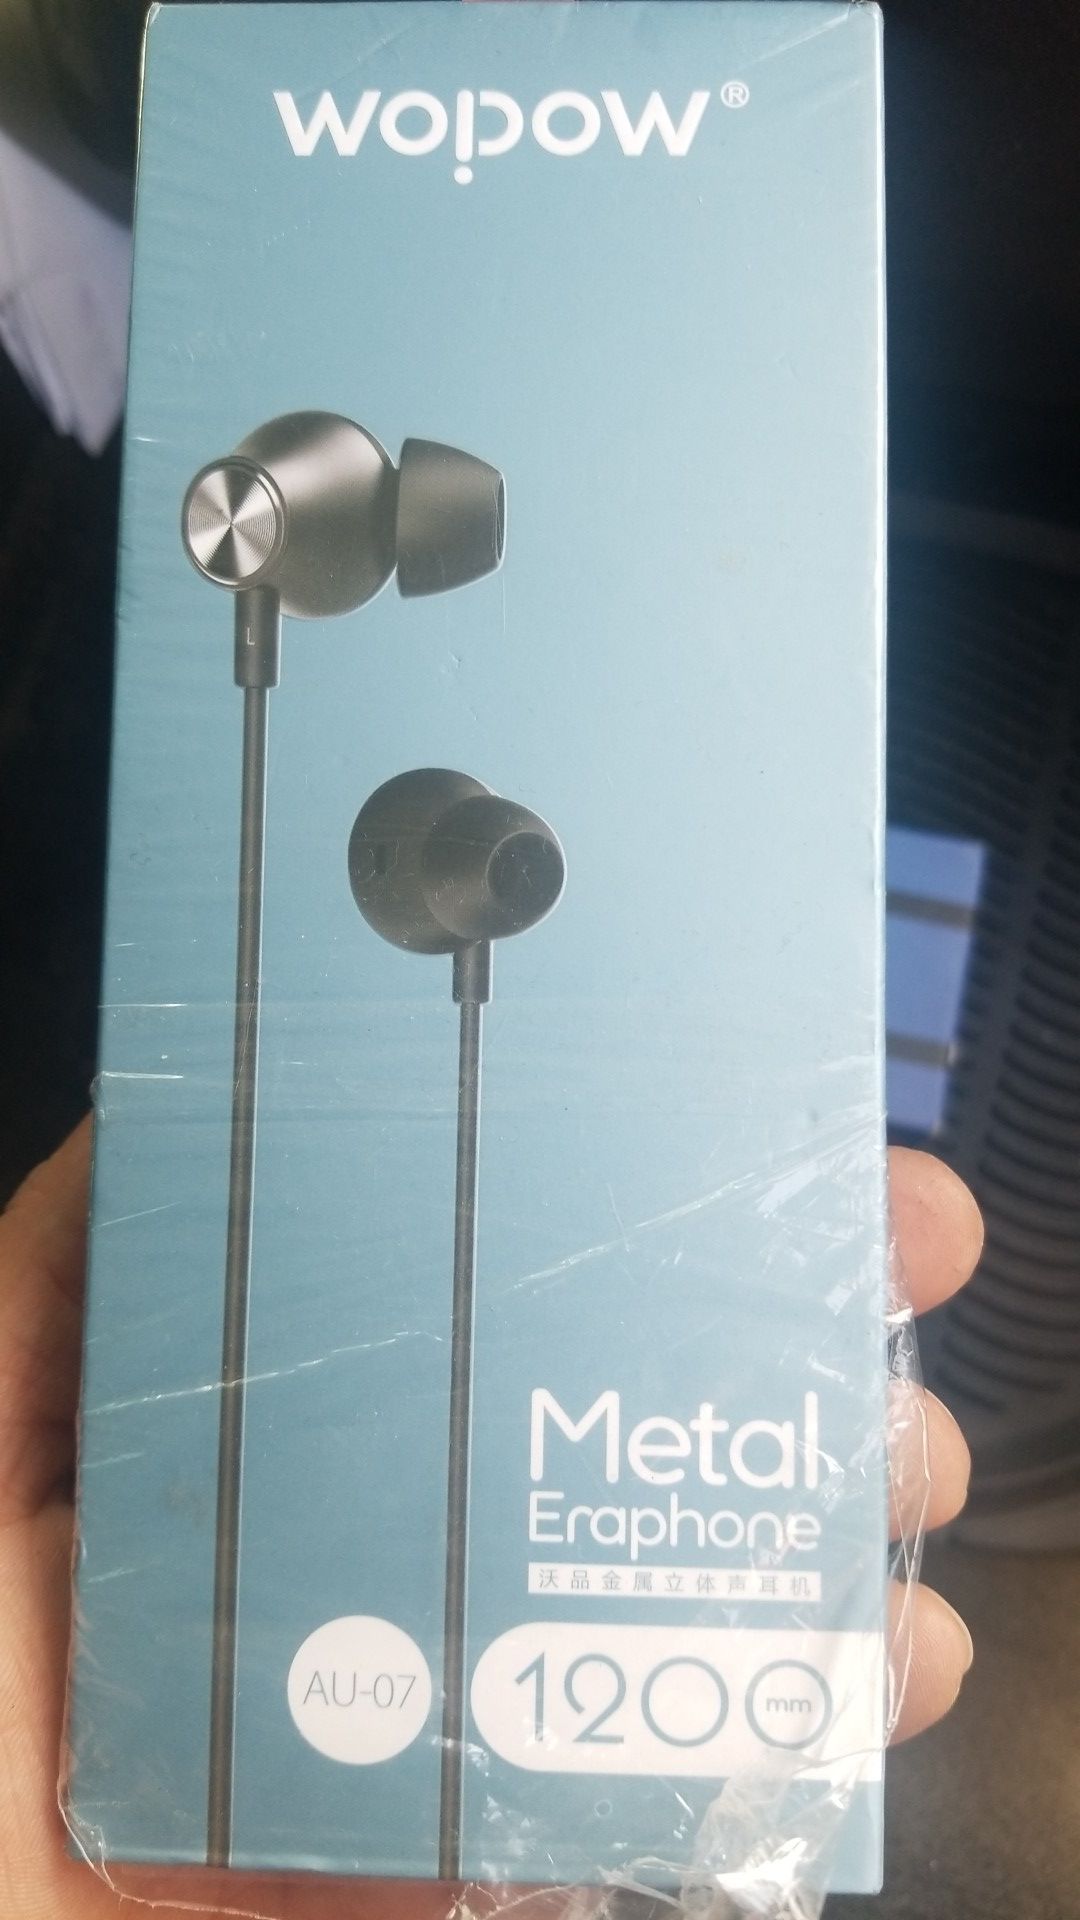 Metal earphones